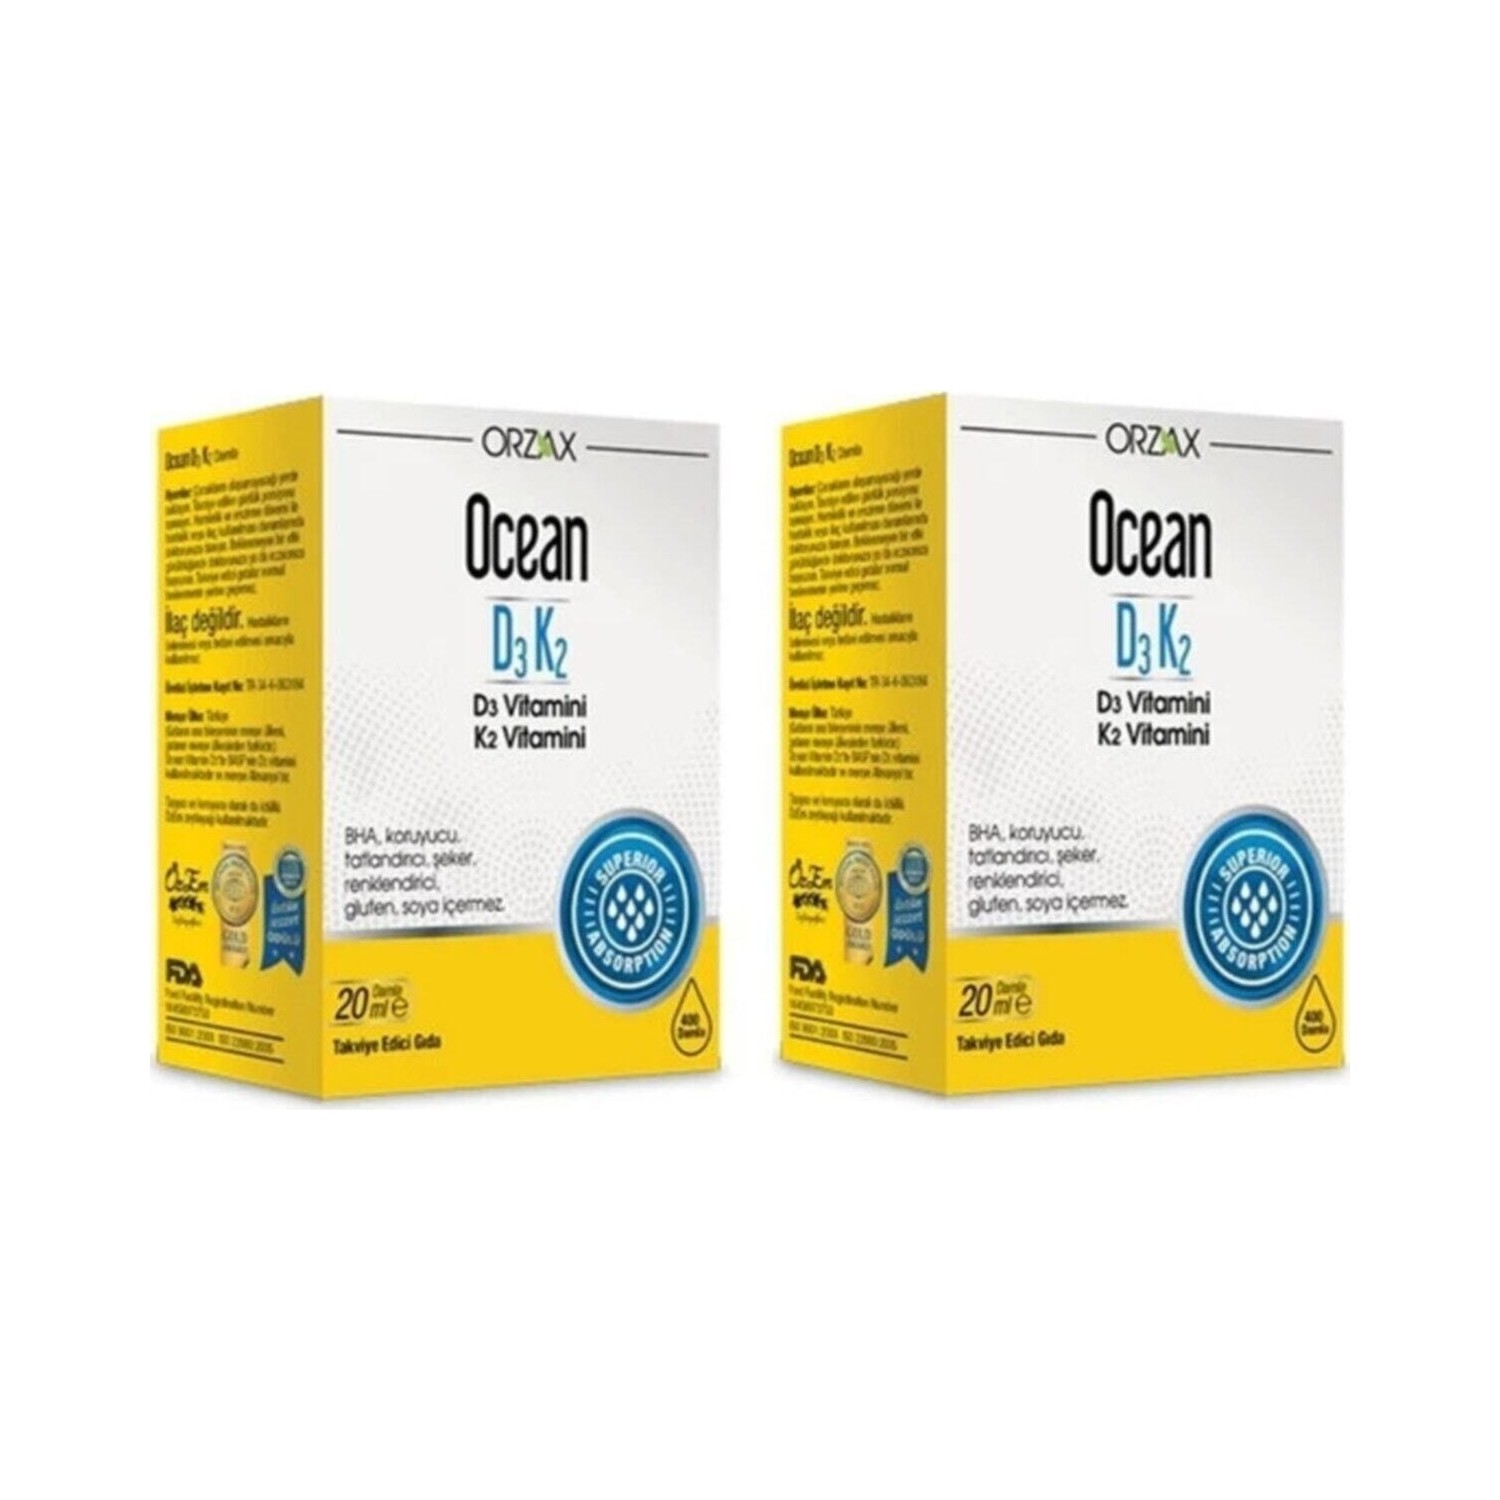 витаминные капли orzax ocean d3 k2 4 флакона по 20 мл Витаминные капли D3 / K2 Orzax, 2 флакона по 20 мл